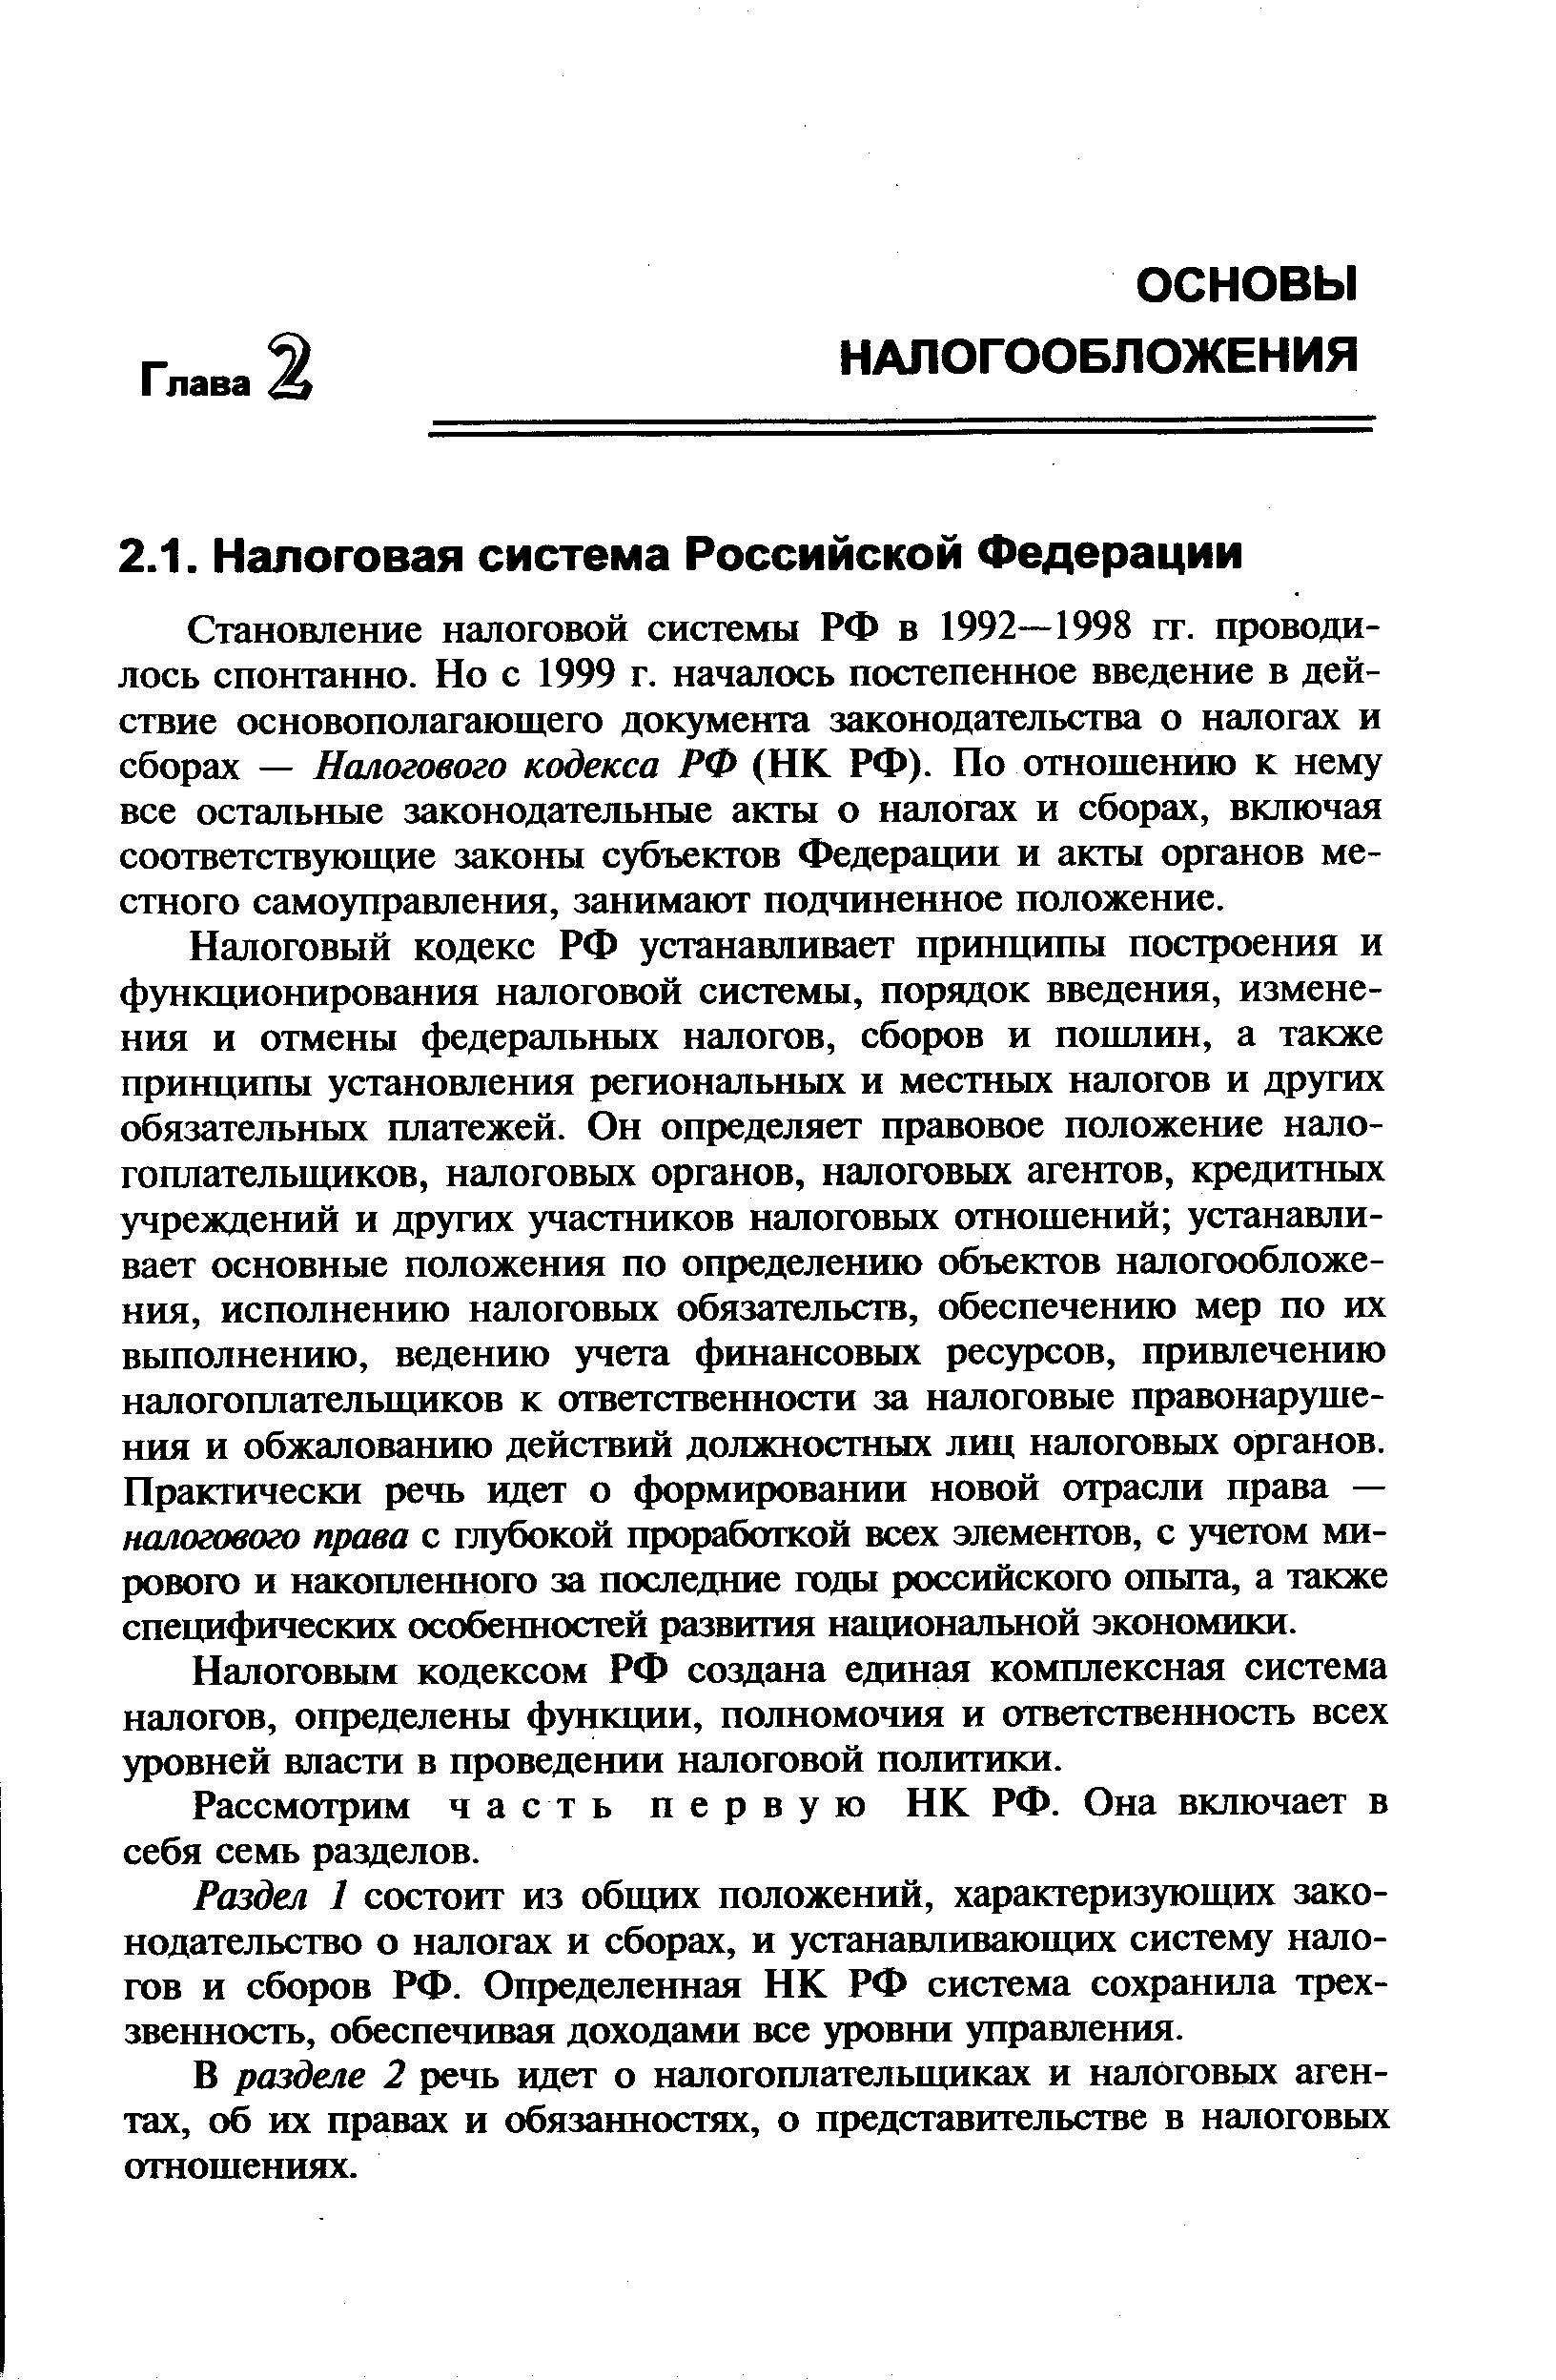 Основы налоговой системы РФ